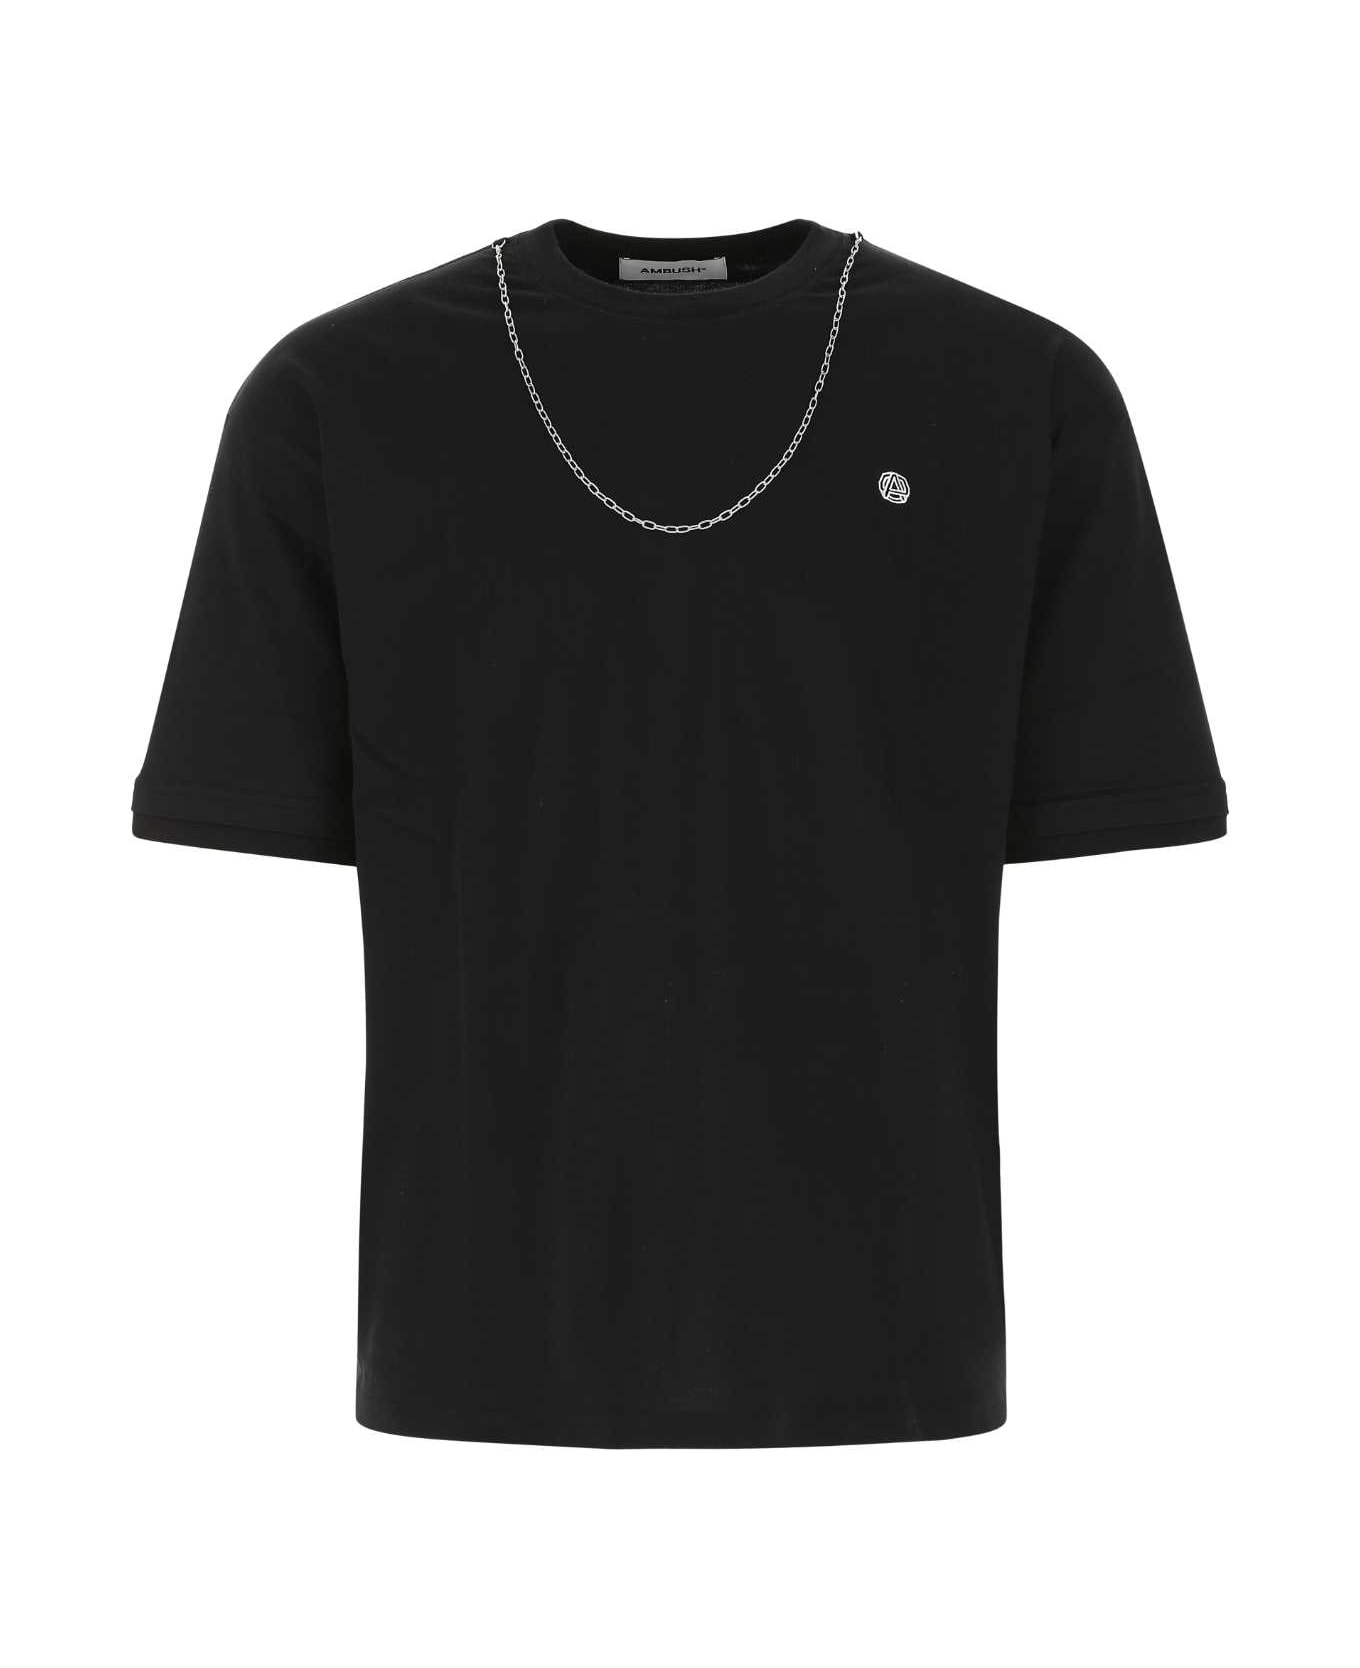 AMBUSH Black Cotton T-shirt - 1003 シャツ